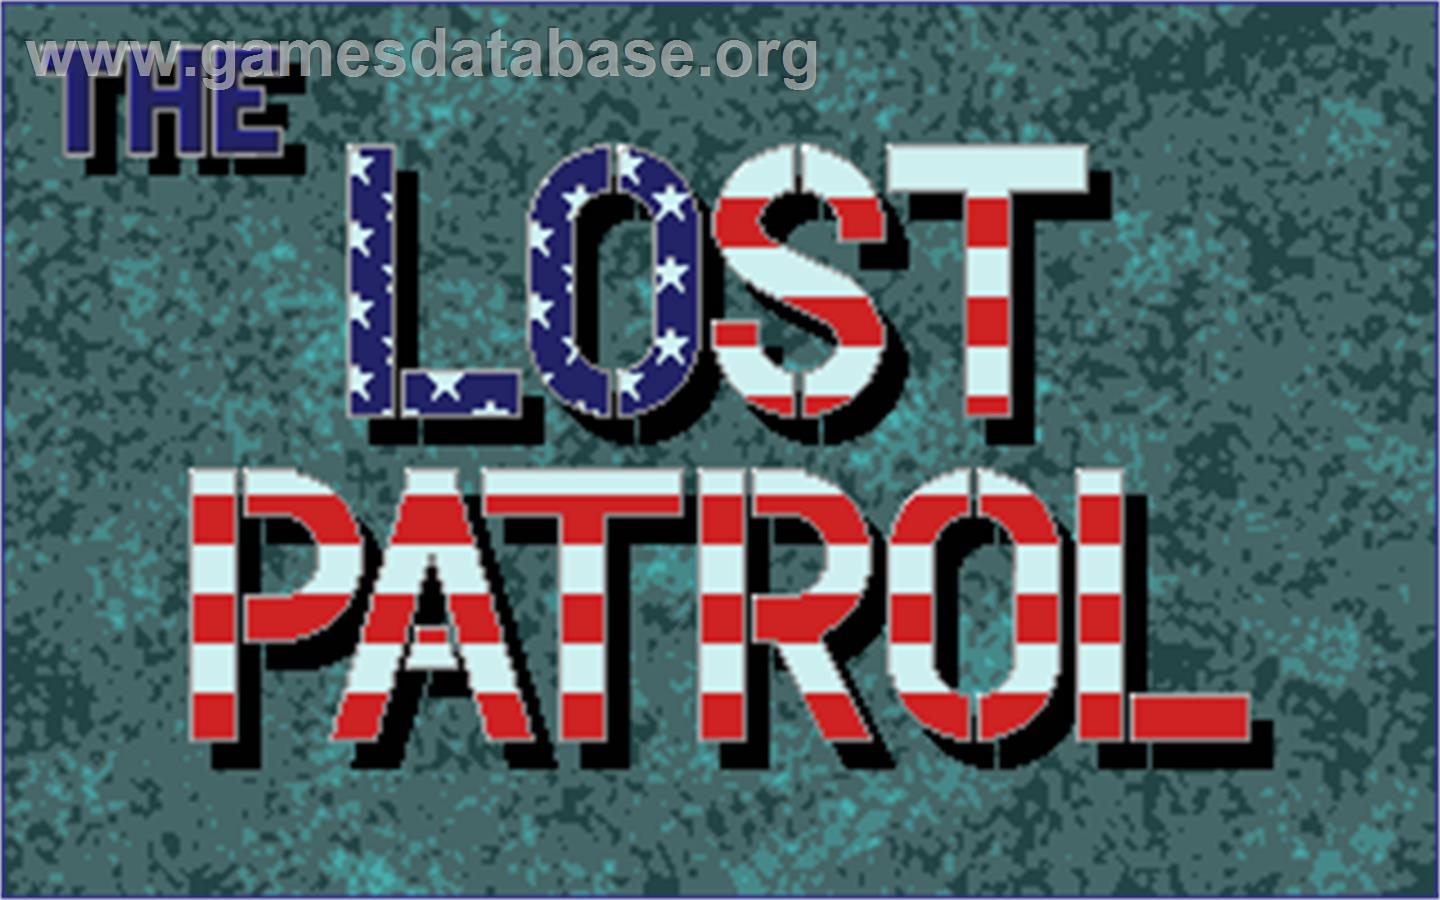 Lost Patrol - Atari ST - Artwork - Title Screen